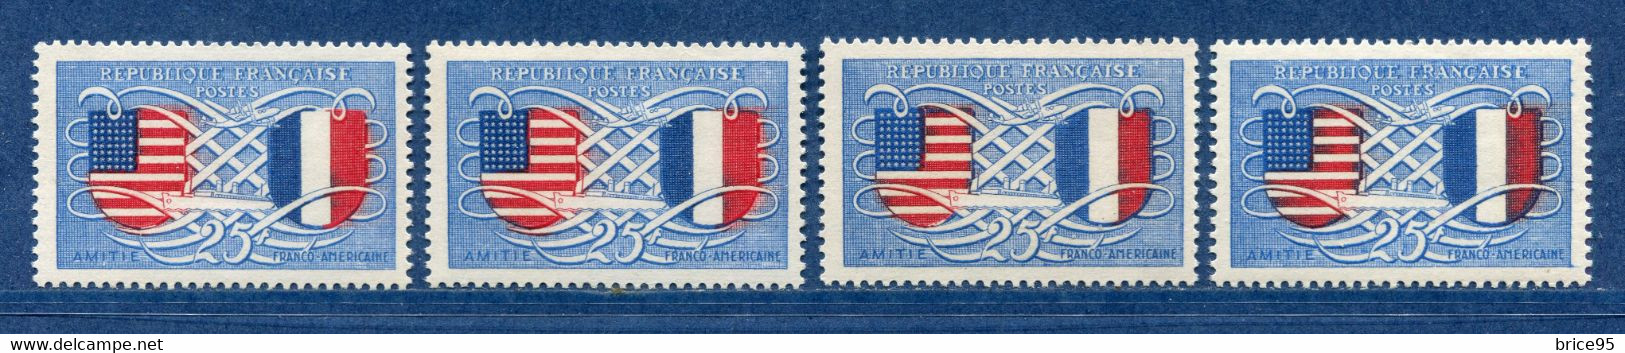 ⭐ France - Variété - YT N° 840 - Couleurs - Pétouille - Neuf Sans Charnière - 1949 ⭐ - Unused Stamps